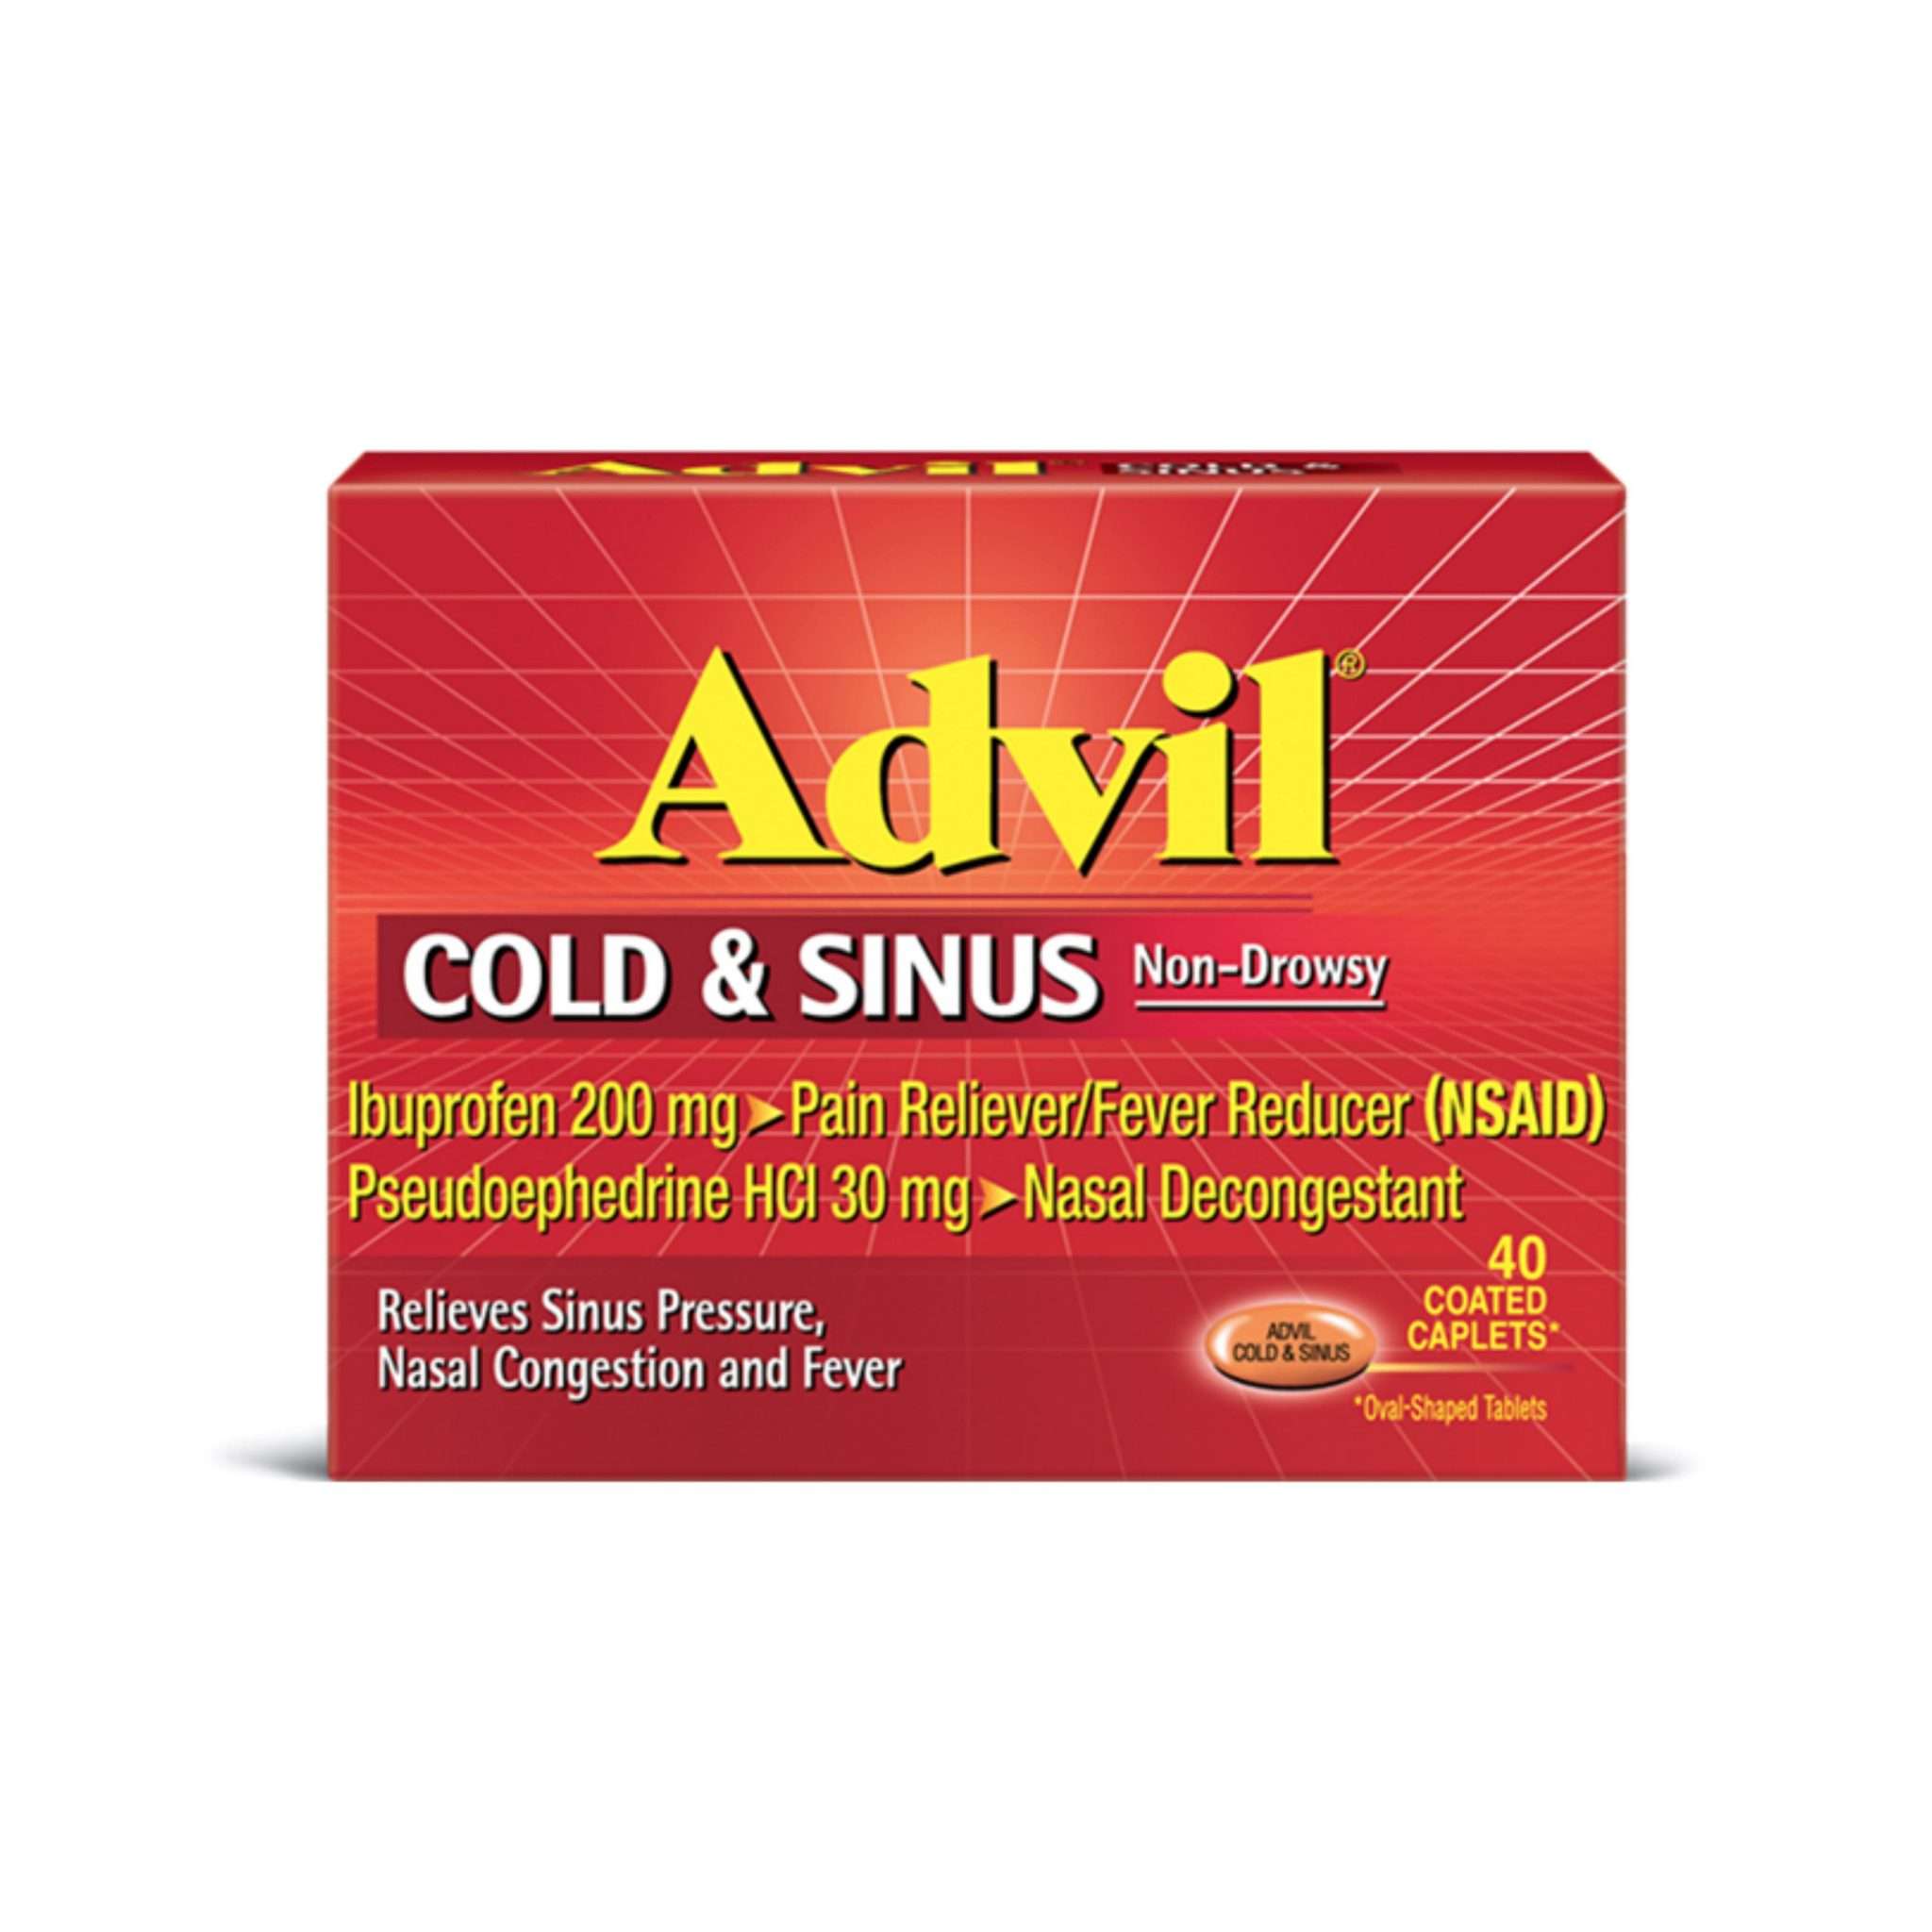 Advil Cold &  Sinus  Pack  Tootoolbay